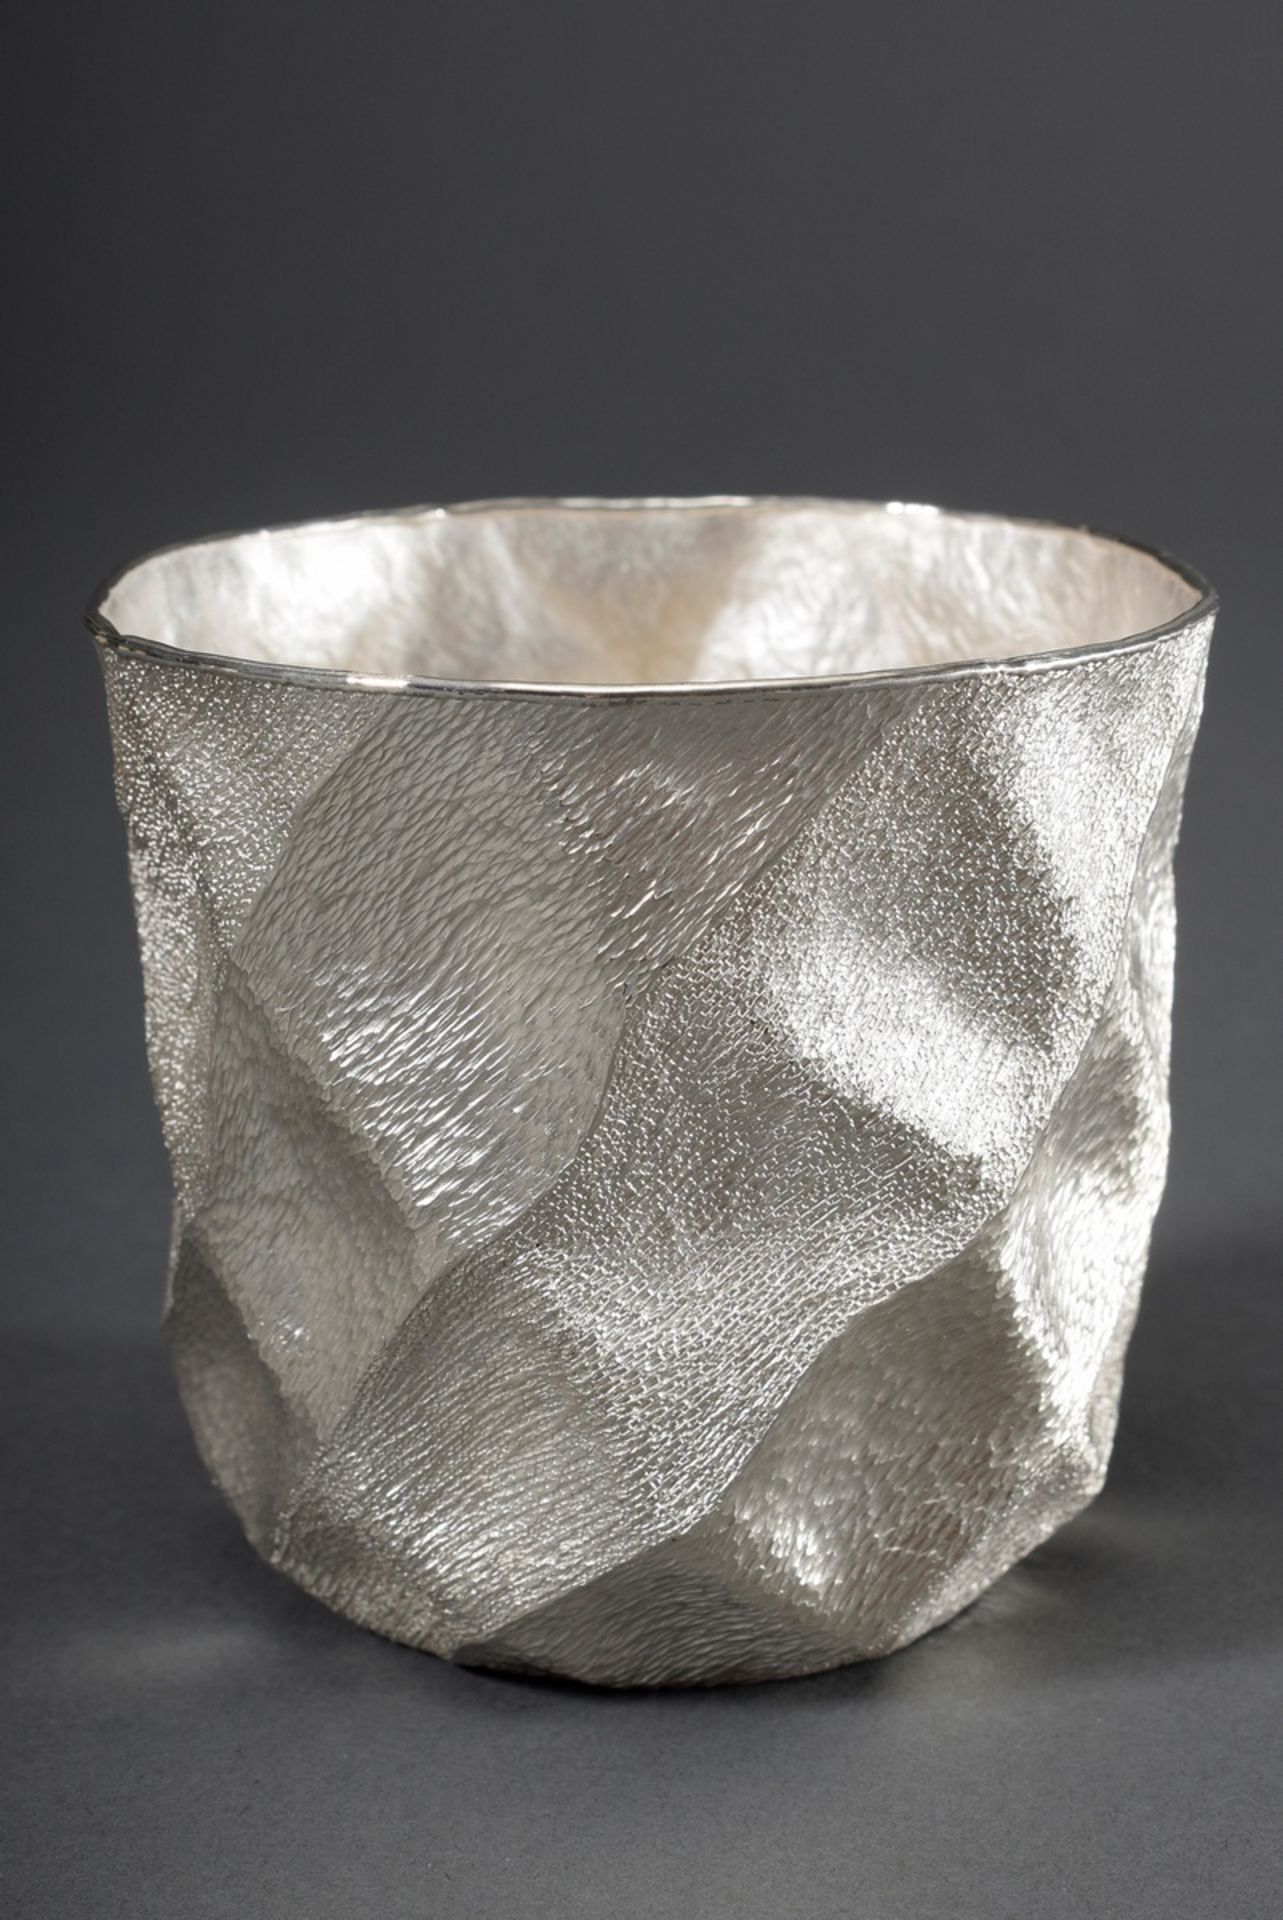 Moderner Becher mit wabenartiger Struktur, Unika | Modern cup with honeycomb-like structure, unique - Image 2 of 4